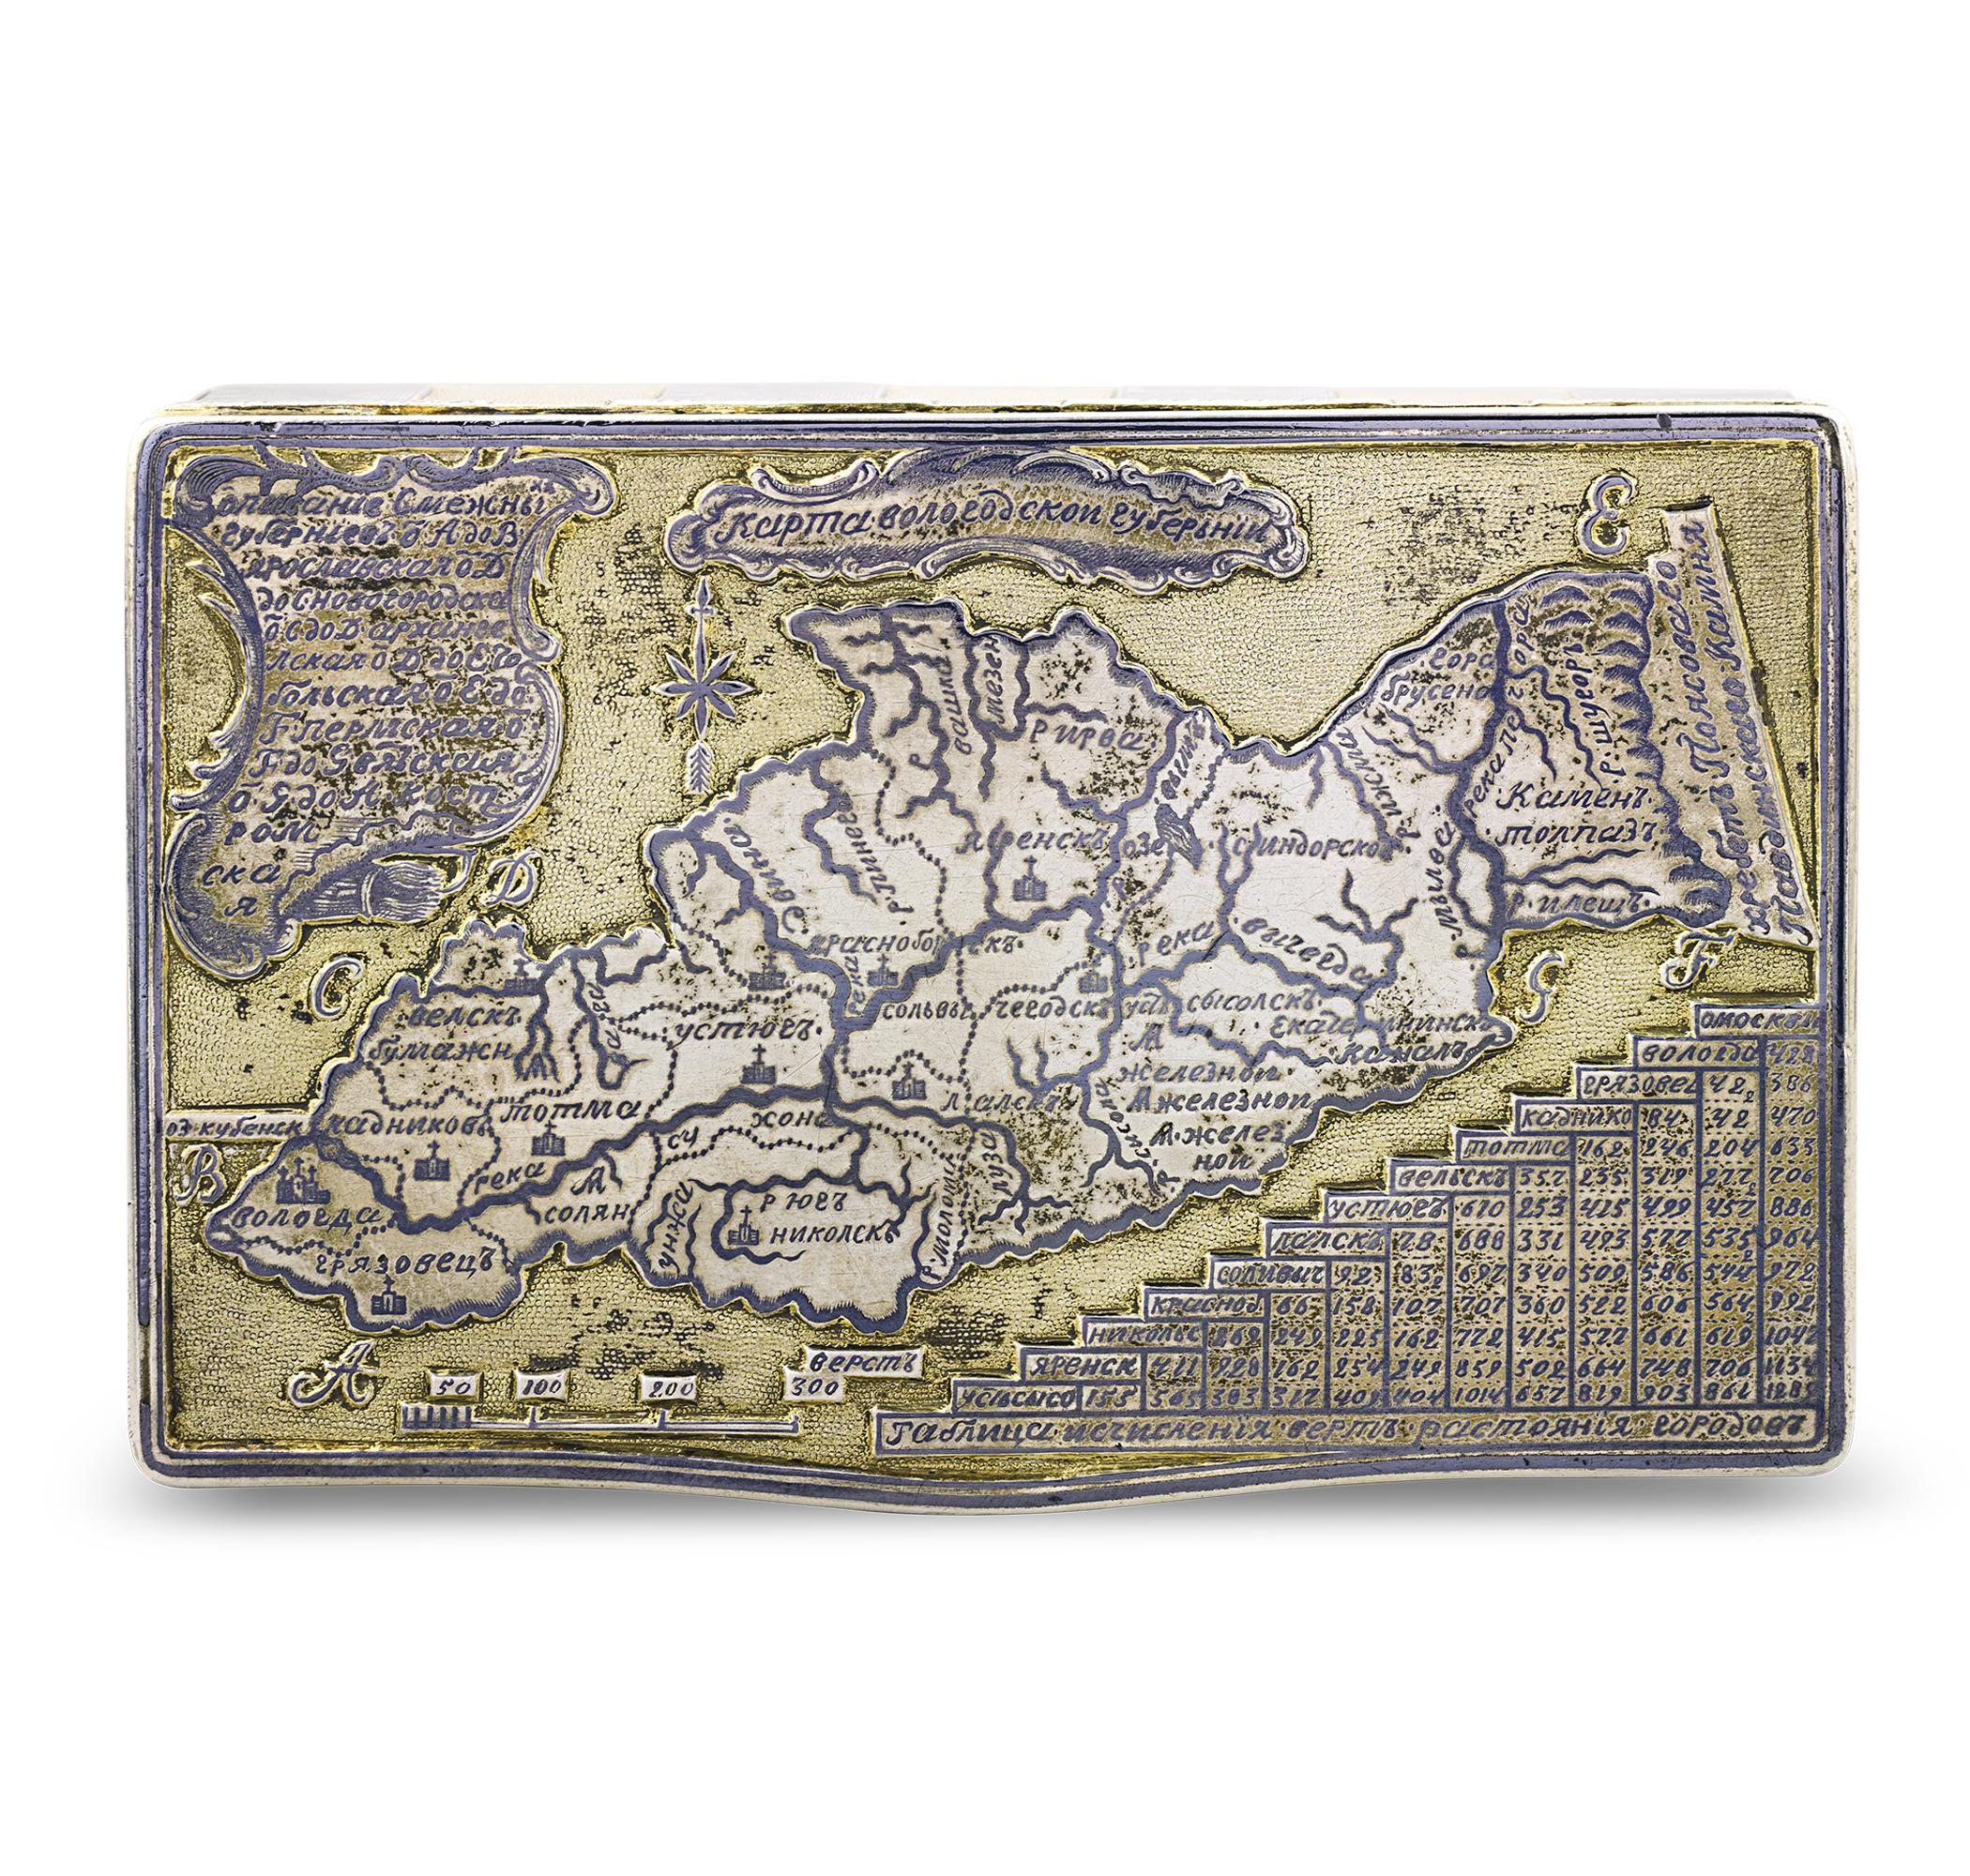 Diese topografische Schnupftabakdose mit Einlegearbeiten aus Silber, Gold und Niello ist ein Meisterwerk des russischen Silbers. Diese außergewöhnliche Kreation, die fast einem wohlhabenden Händler des 19. Jahrhunderts gehörte, erzählt eine